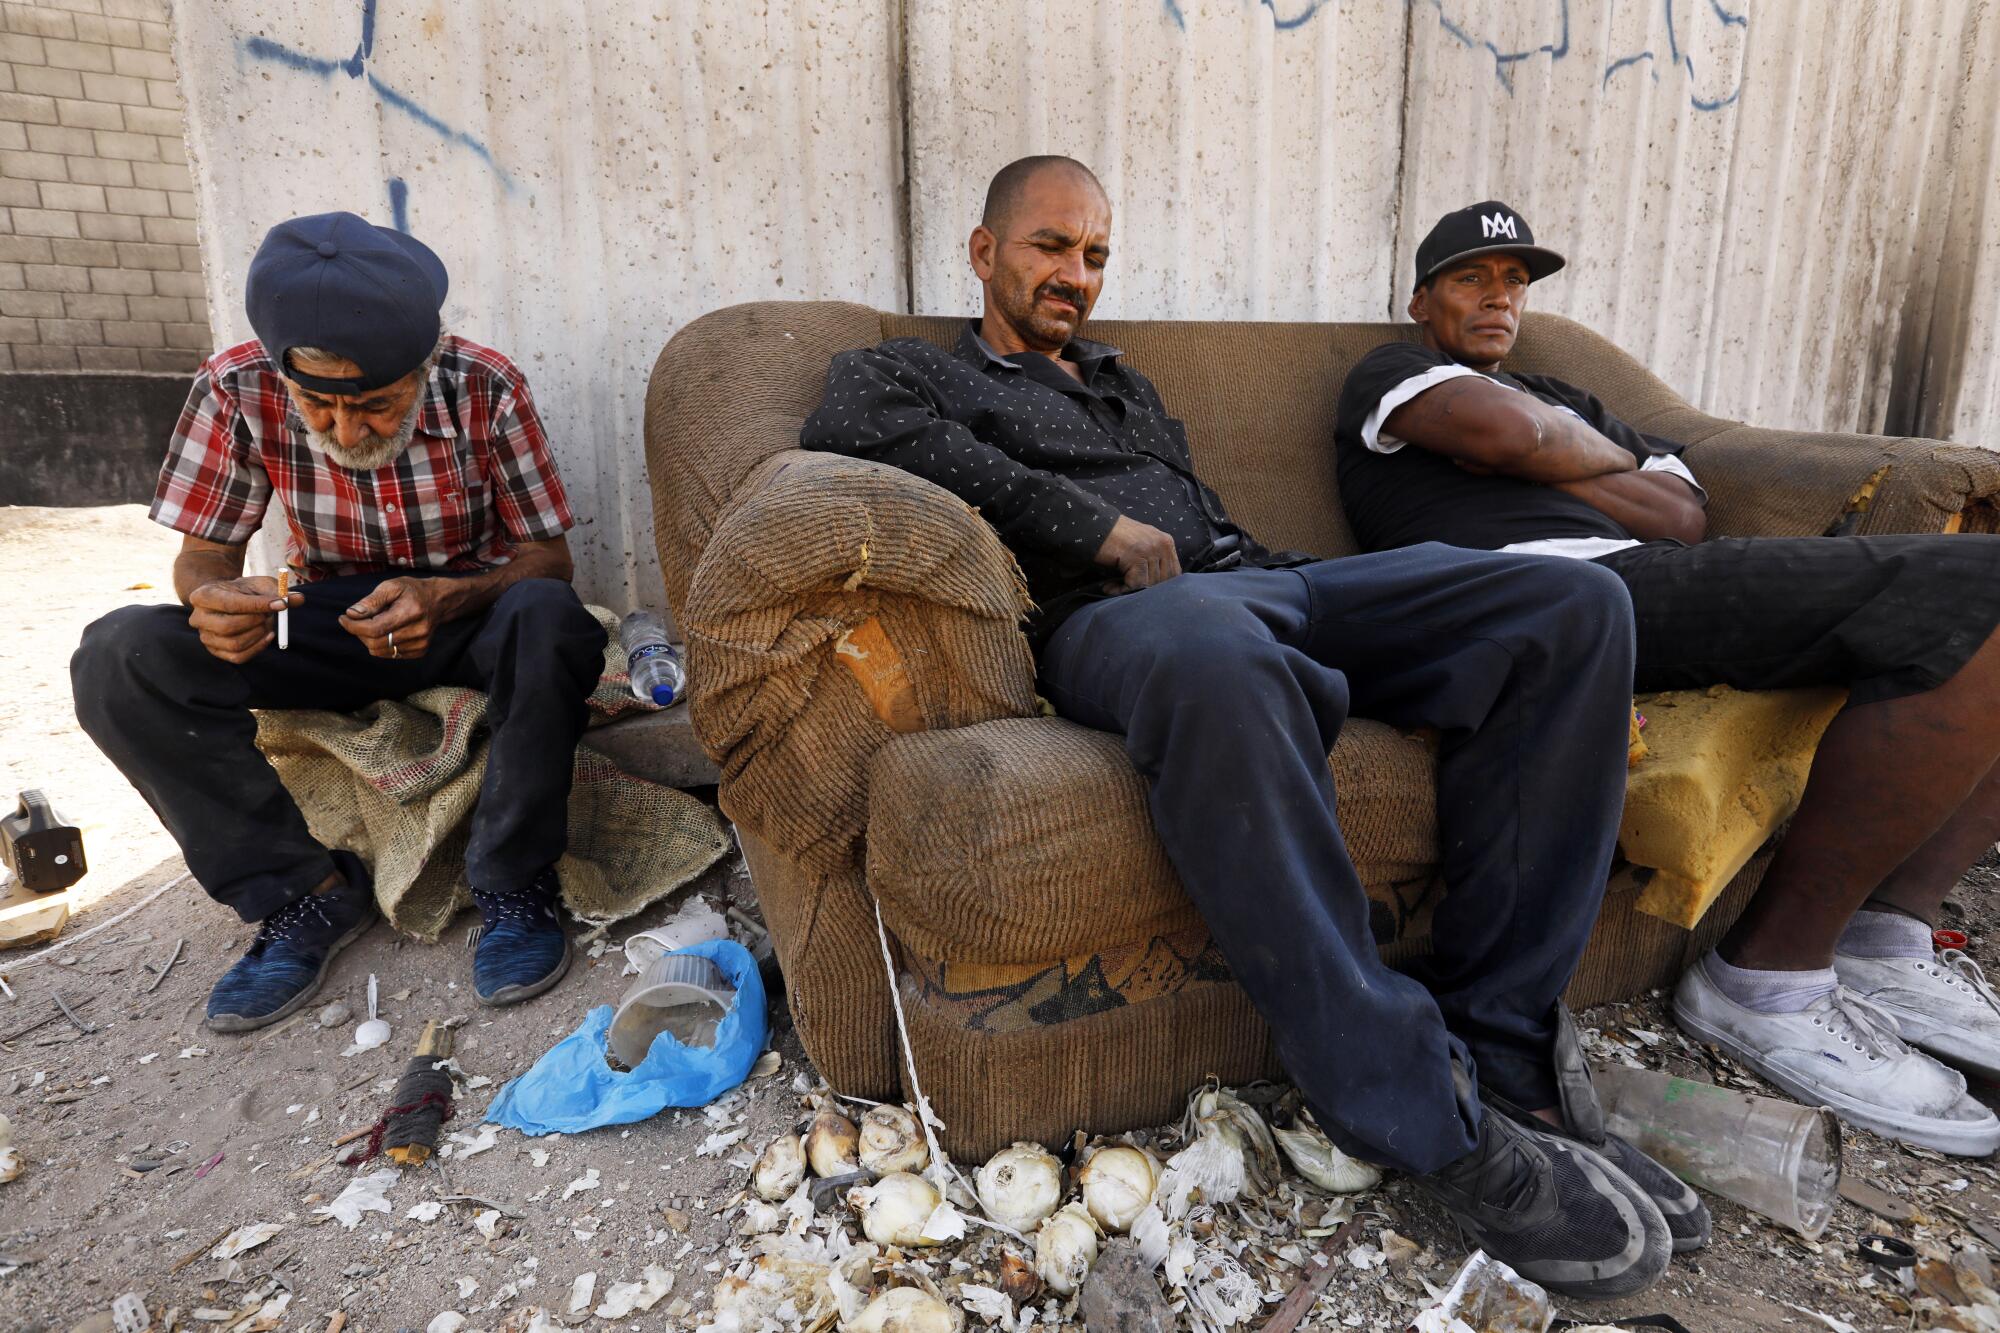 Dos hombres están sentados en un sofá junto a otro hombre, con escombros en el suelo 